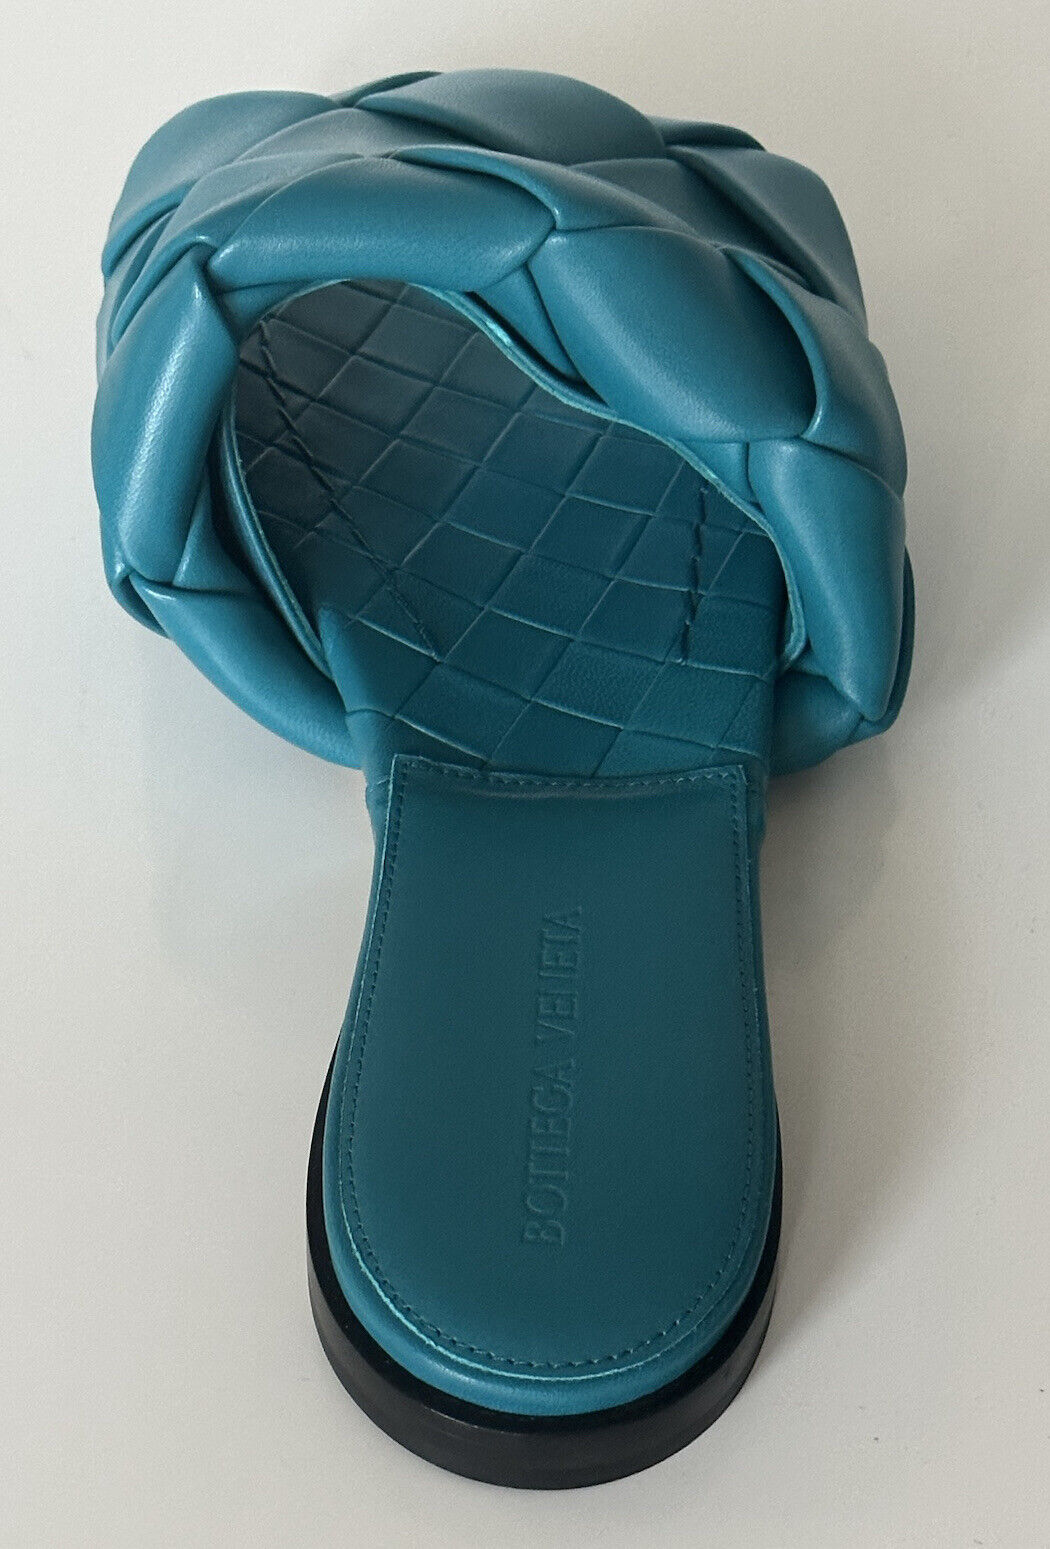 NWT $1350 Bottega Veneta Petroleum Синие сандалии на плоской подошве Туфли 8 США 608853 